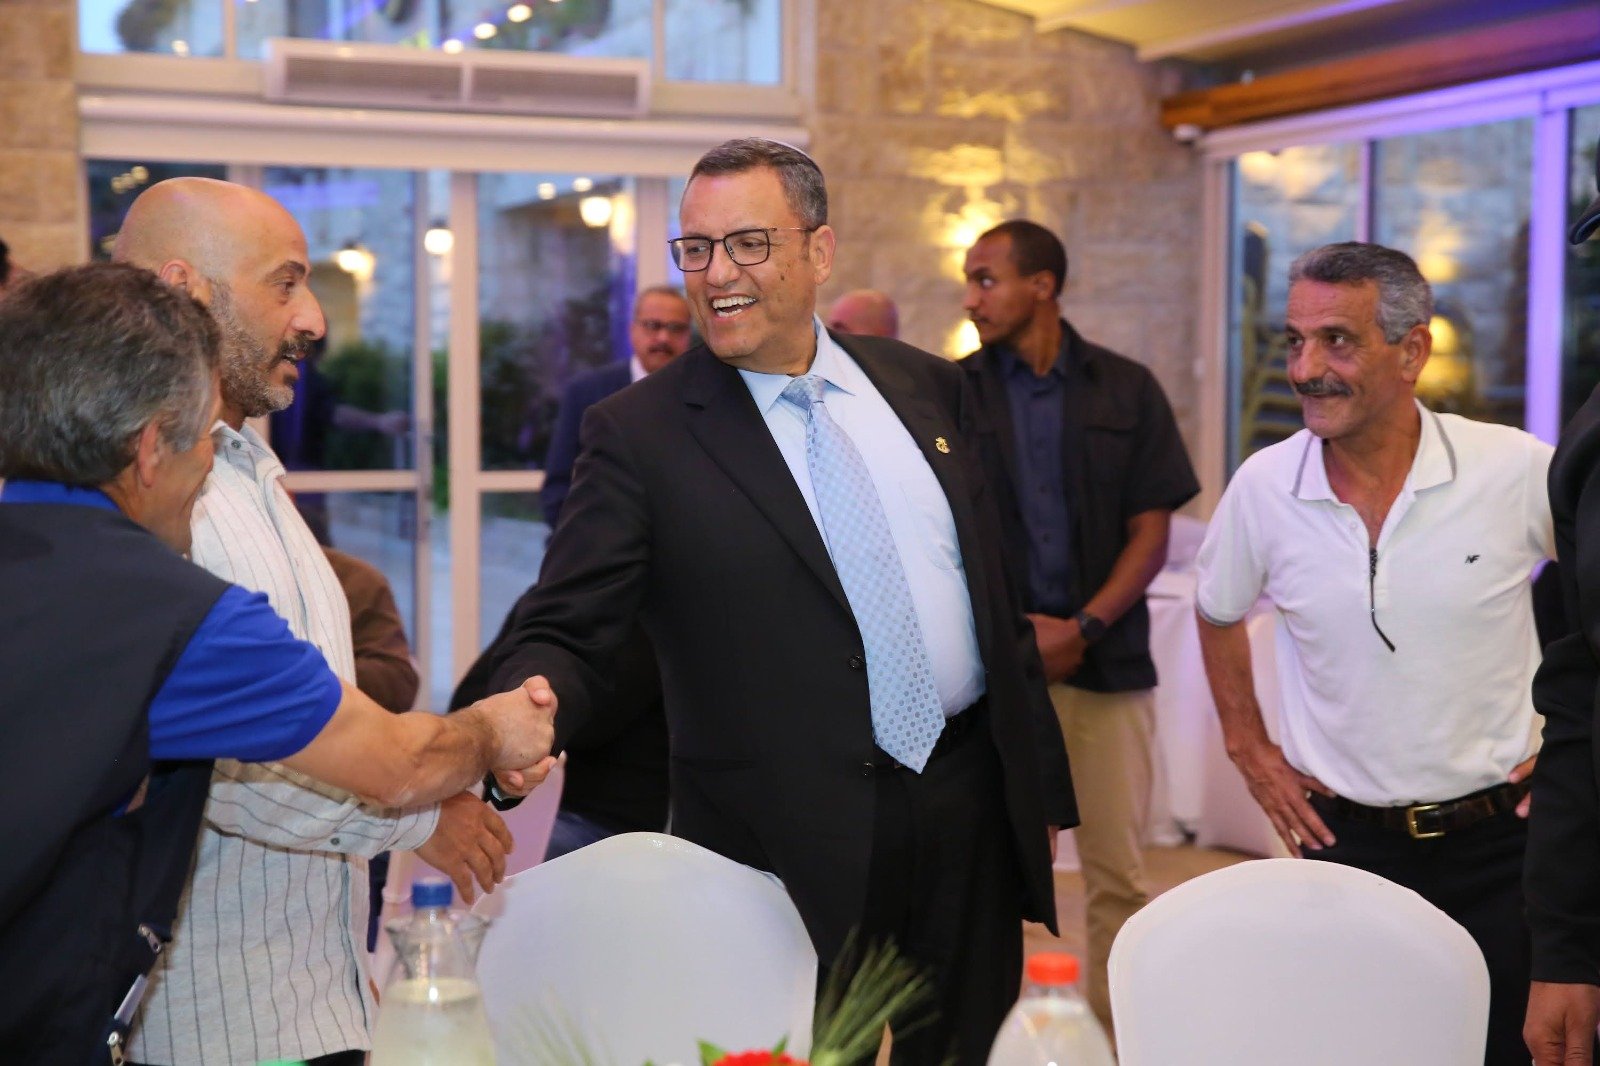 بلدية القدس: رئيس البلدية موشيه ليون يشارك بإفطار جماعي مع شخصيات من شرقي القدس-0